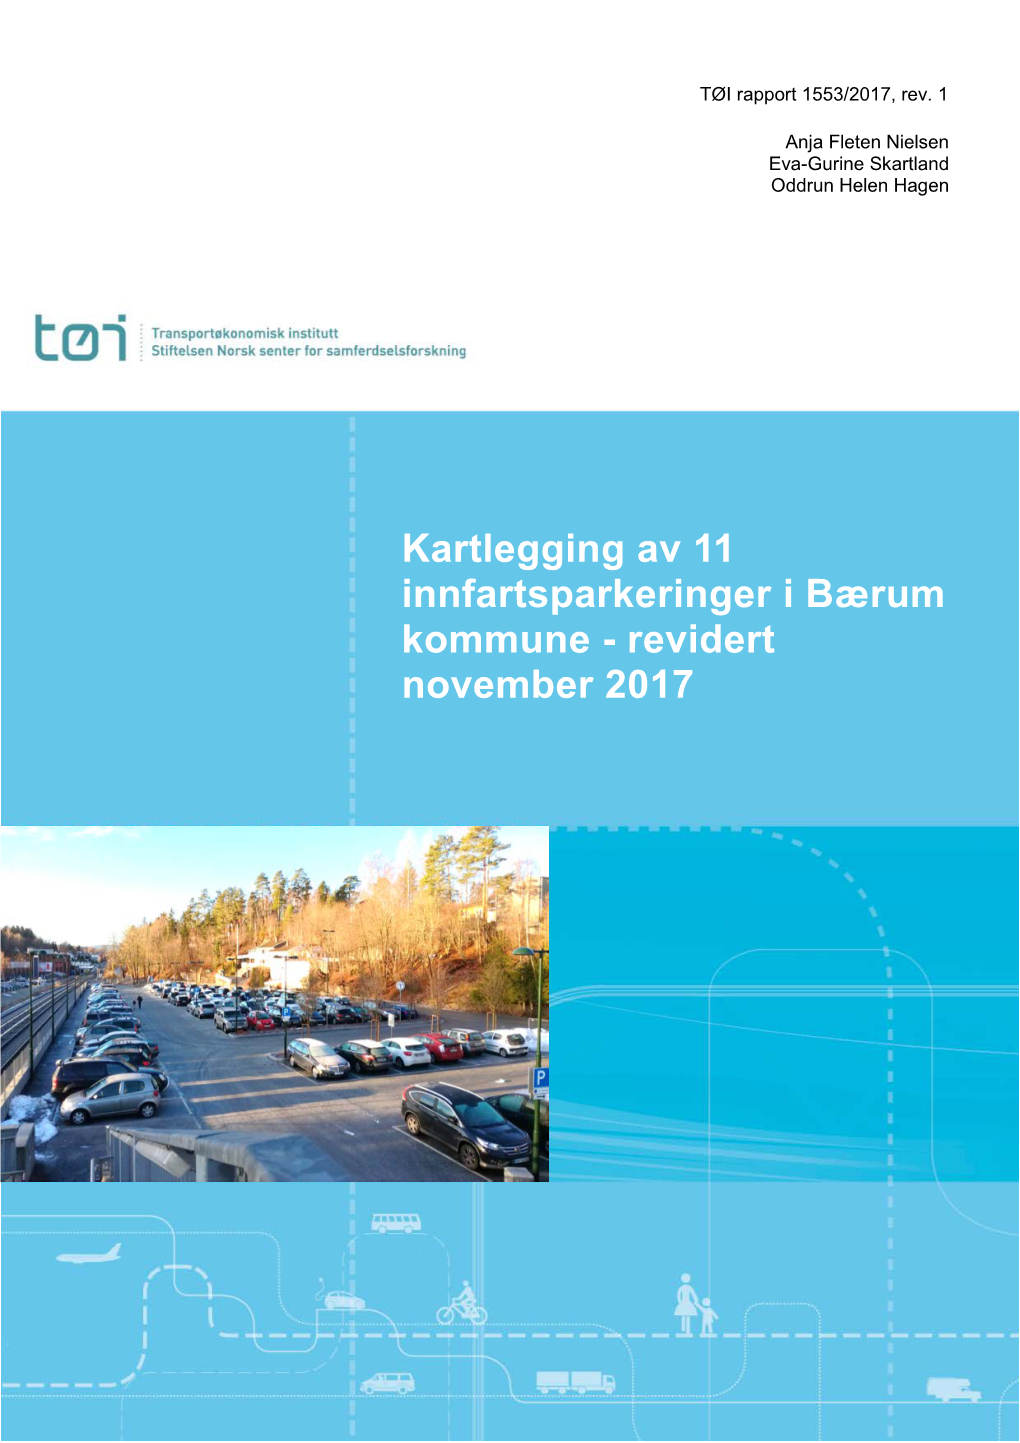 Kartlegging Av 11 Innfartsparkeringer I Bærum Kommune - Revidert November 2017